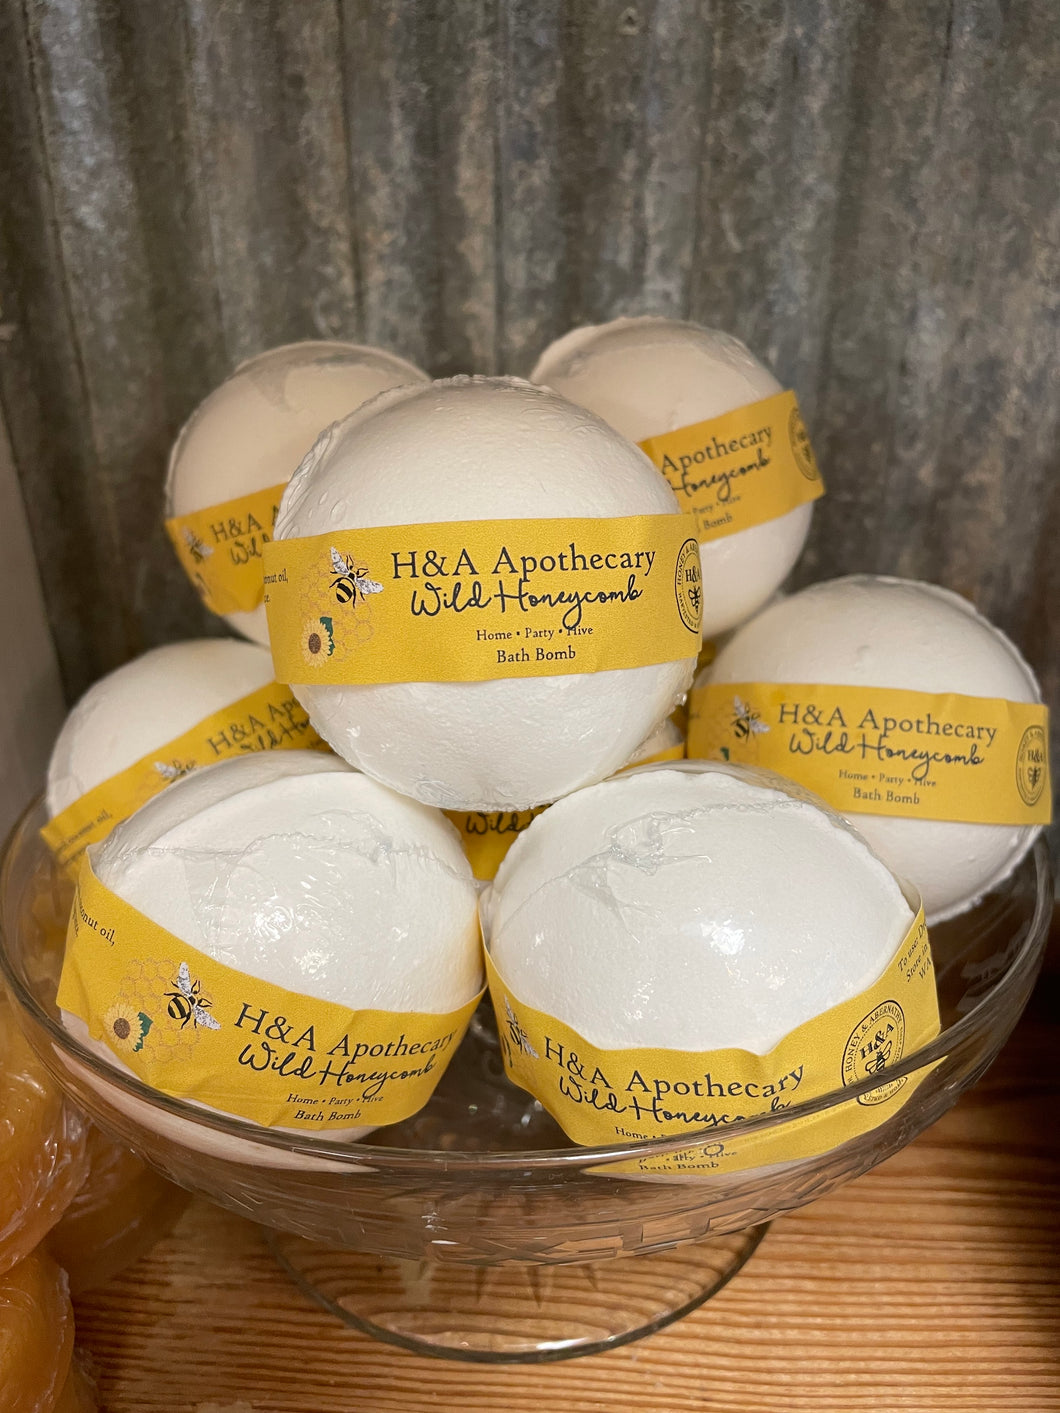 H&A Apothecary Wild Honeycomb Bath Bomb